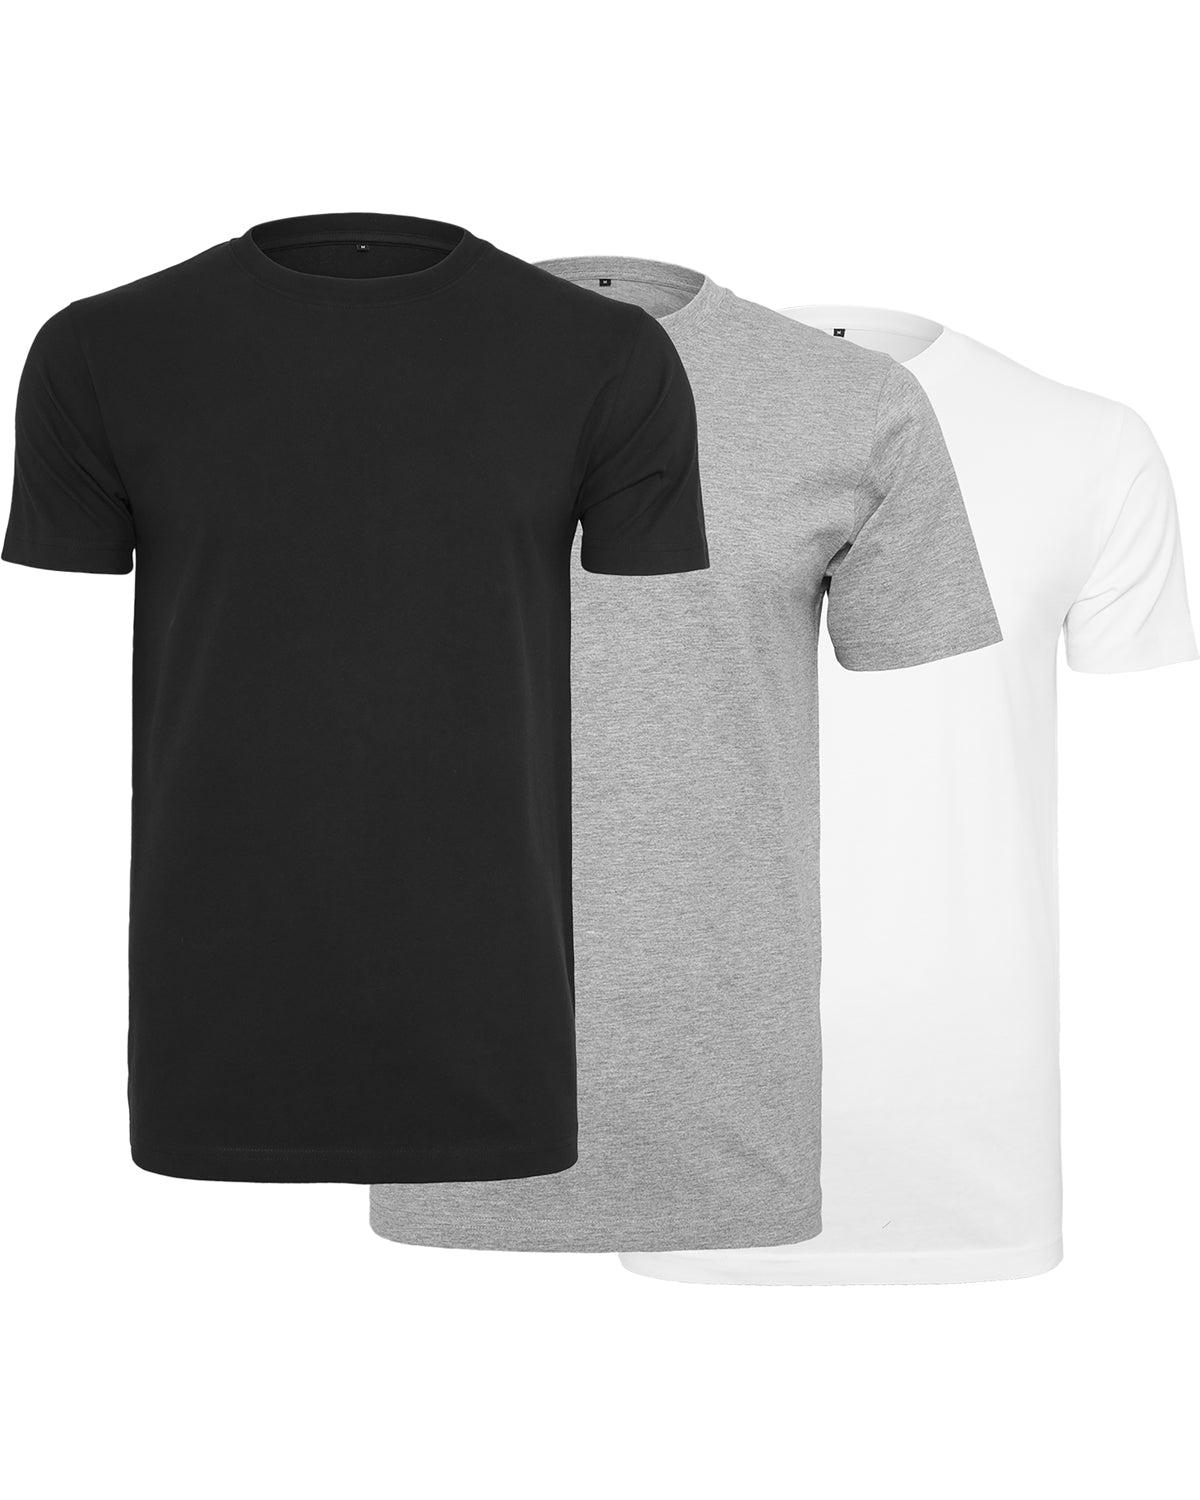 Disturb Clothing Round neck t-paita 3-pack - Musta/Harmaa/Valkoinen